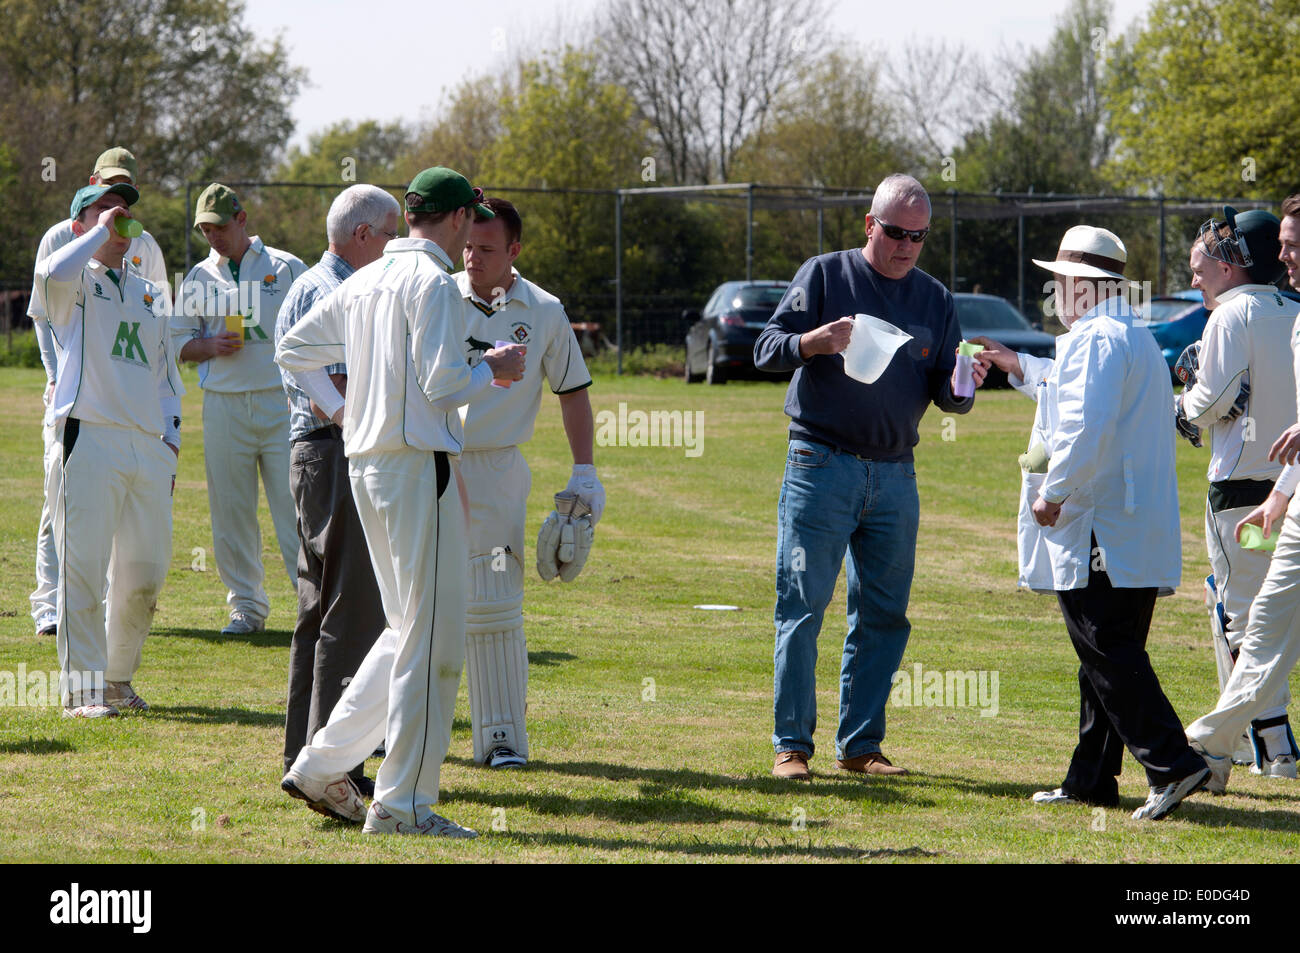 Village cricket intervallo di bevande al Catherine de Barnes, West Midlands, England, Regno Unito Foto Stock